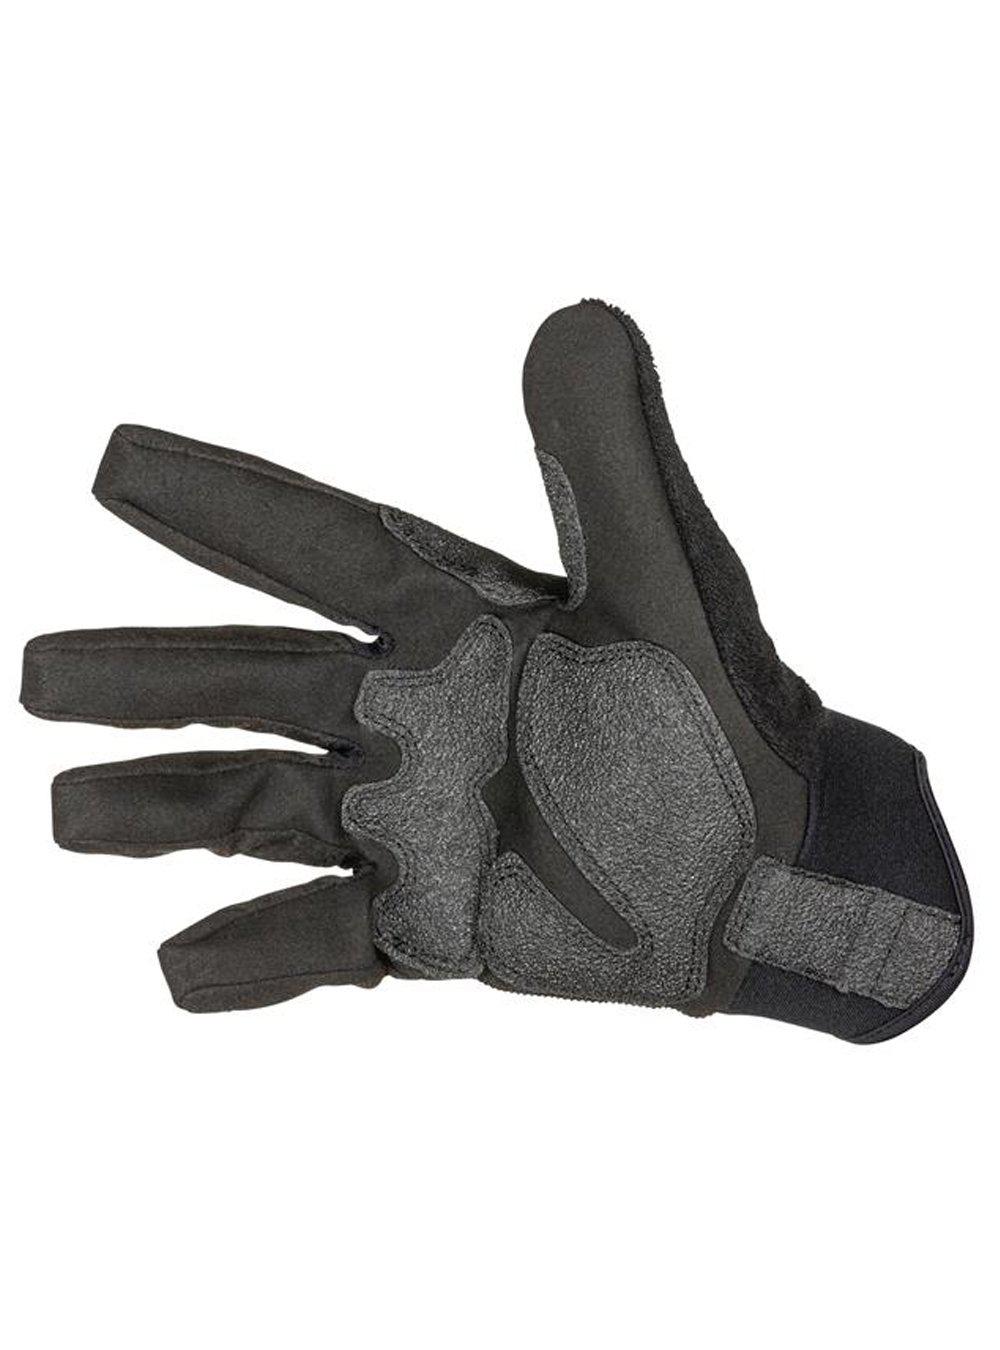 5.11 Tactical Tac A3 Gloves - TacSource